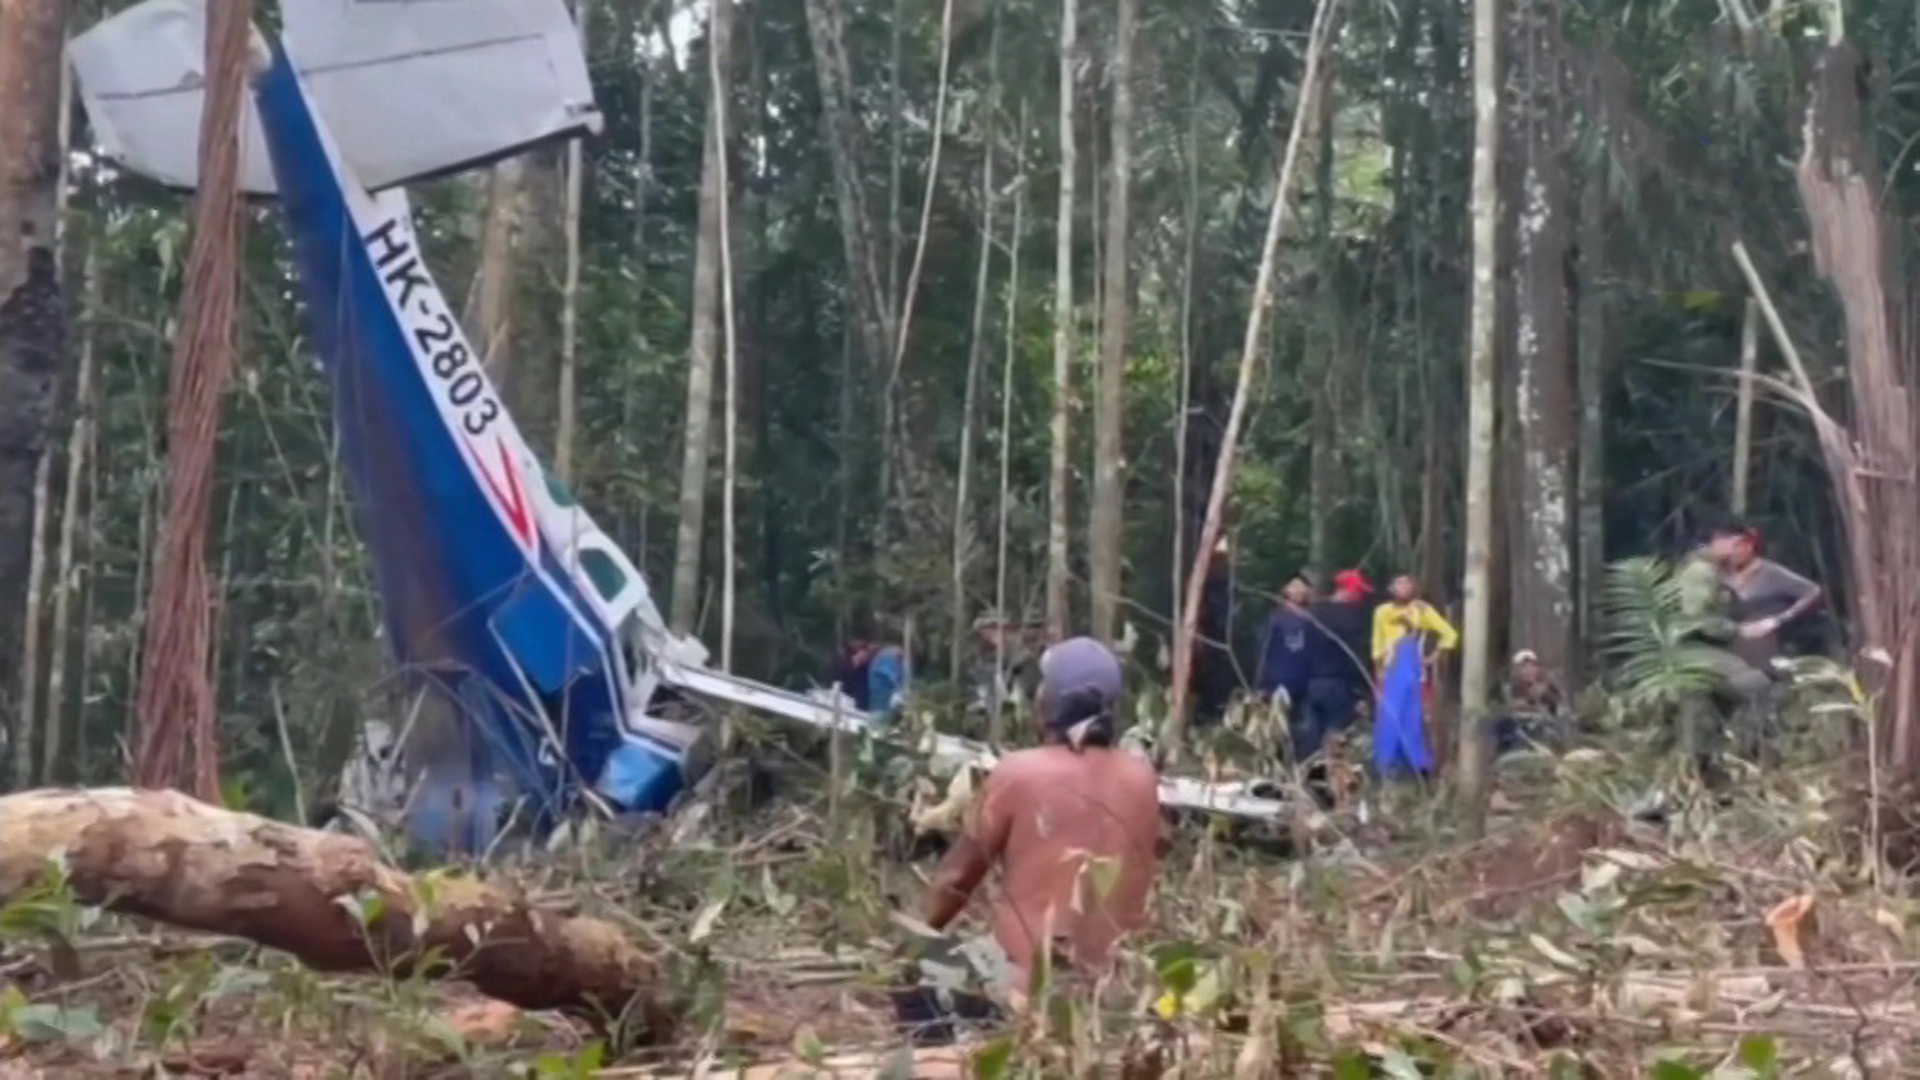 Мир после падения 118. Дети в джунглях Колумбия авиакатастрофа. В джунглях Колумбии упал самолет. Упавшие самолеты в джунглях. Авиакатастрофа в джунглях.